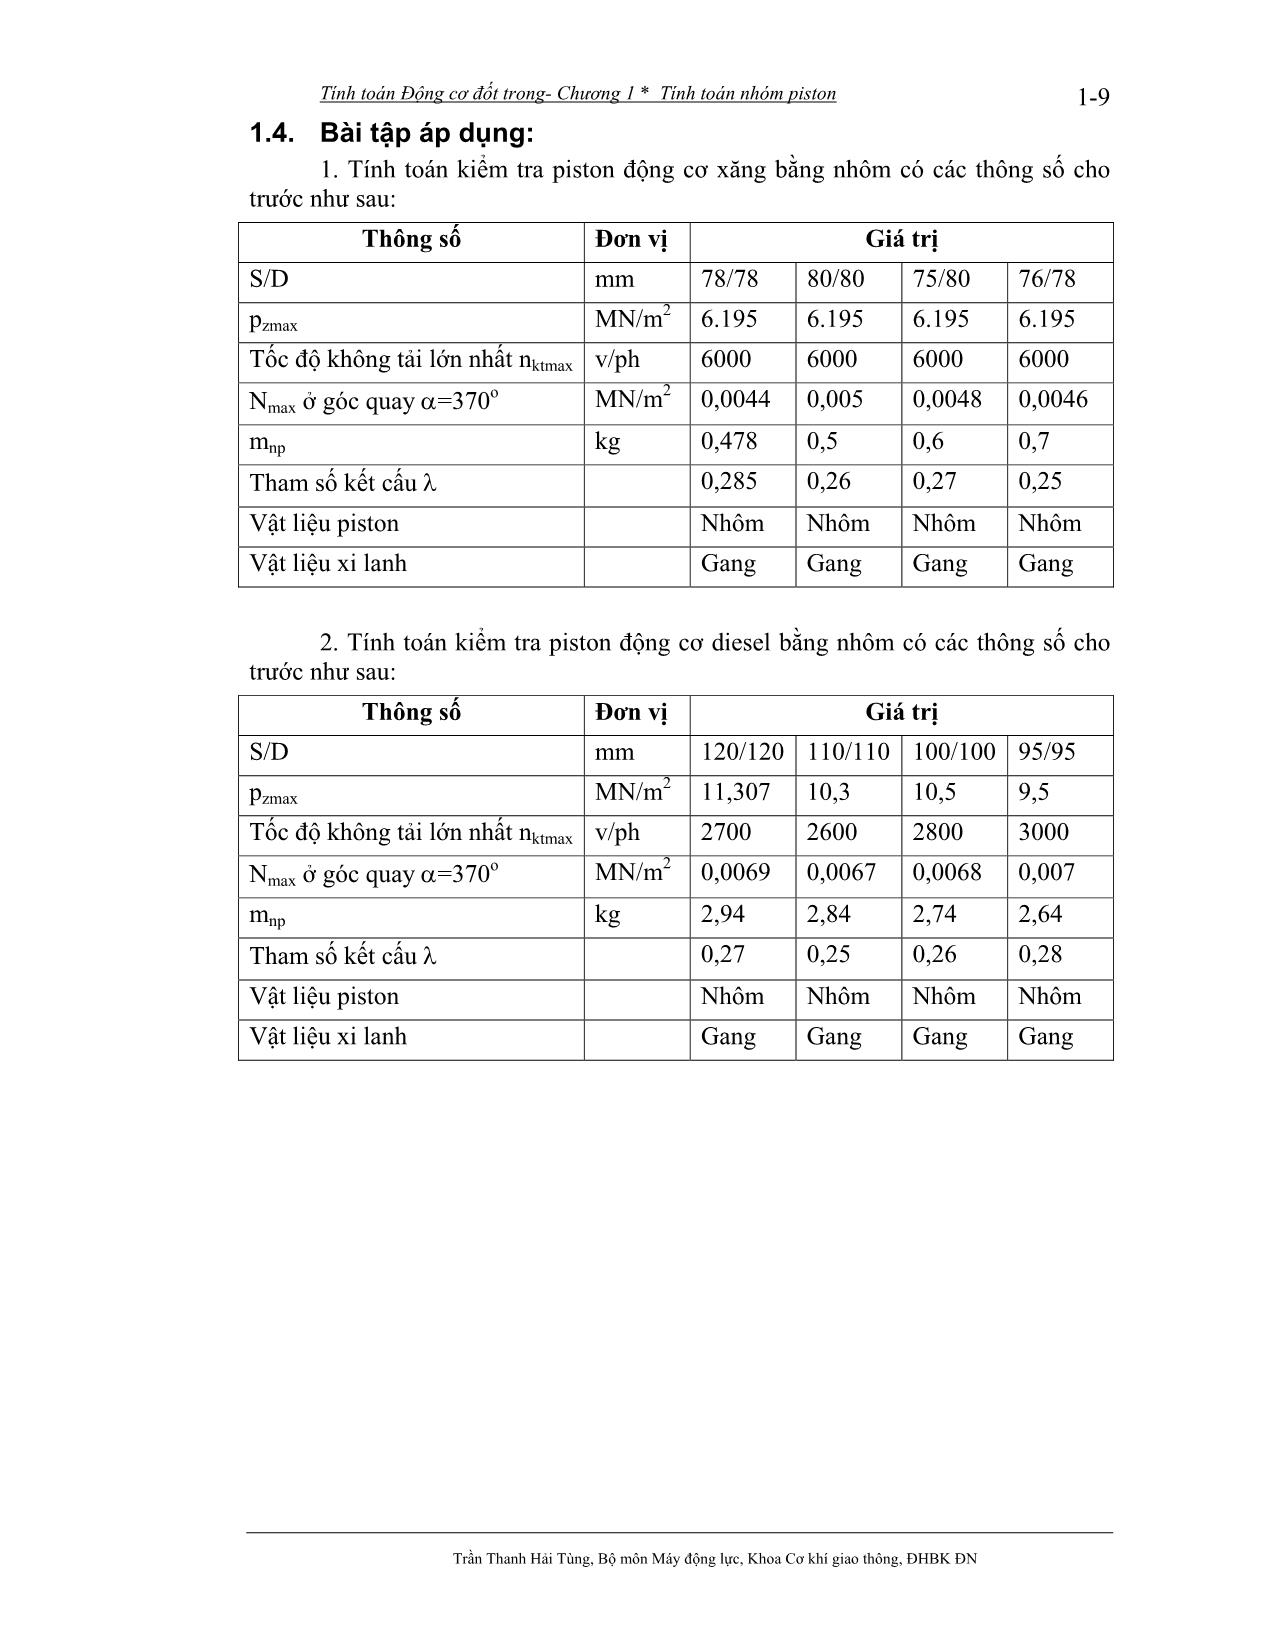 Bài giảng Tính toán thiết kế động cơ đốt trong - Trần Thanh Hải Tùng trang 10